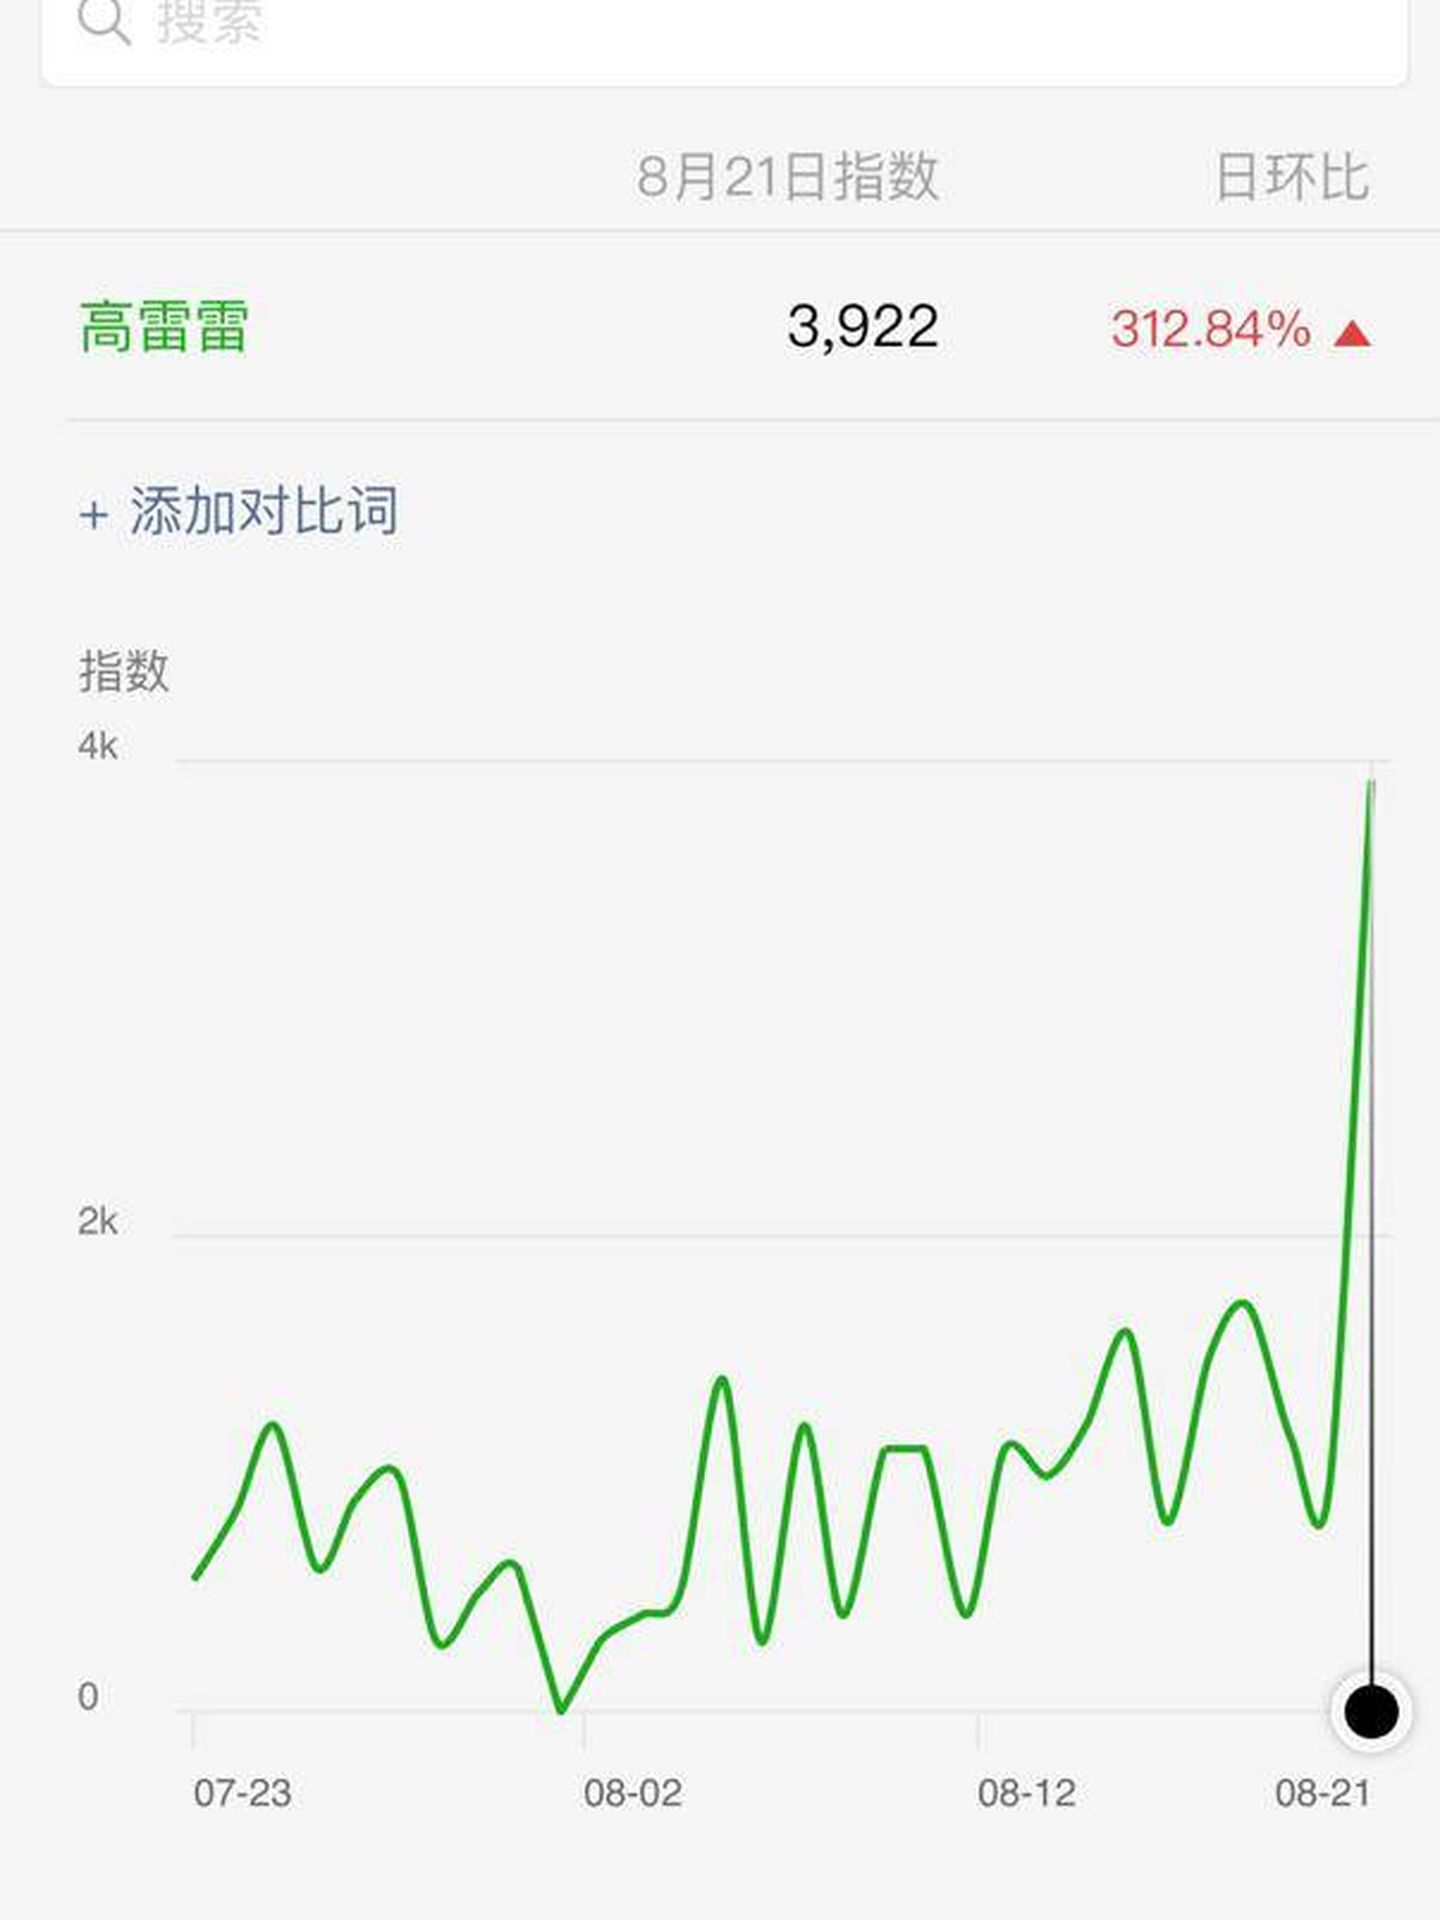 El interés por Gao Leilei en WeChat se disparó esta semana